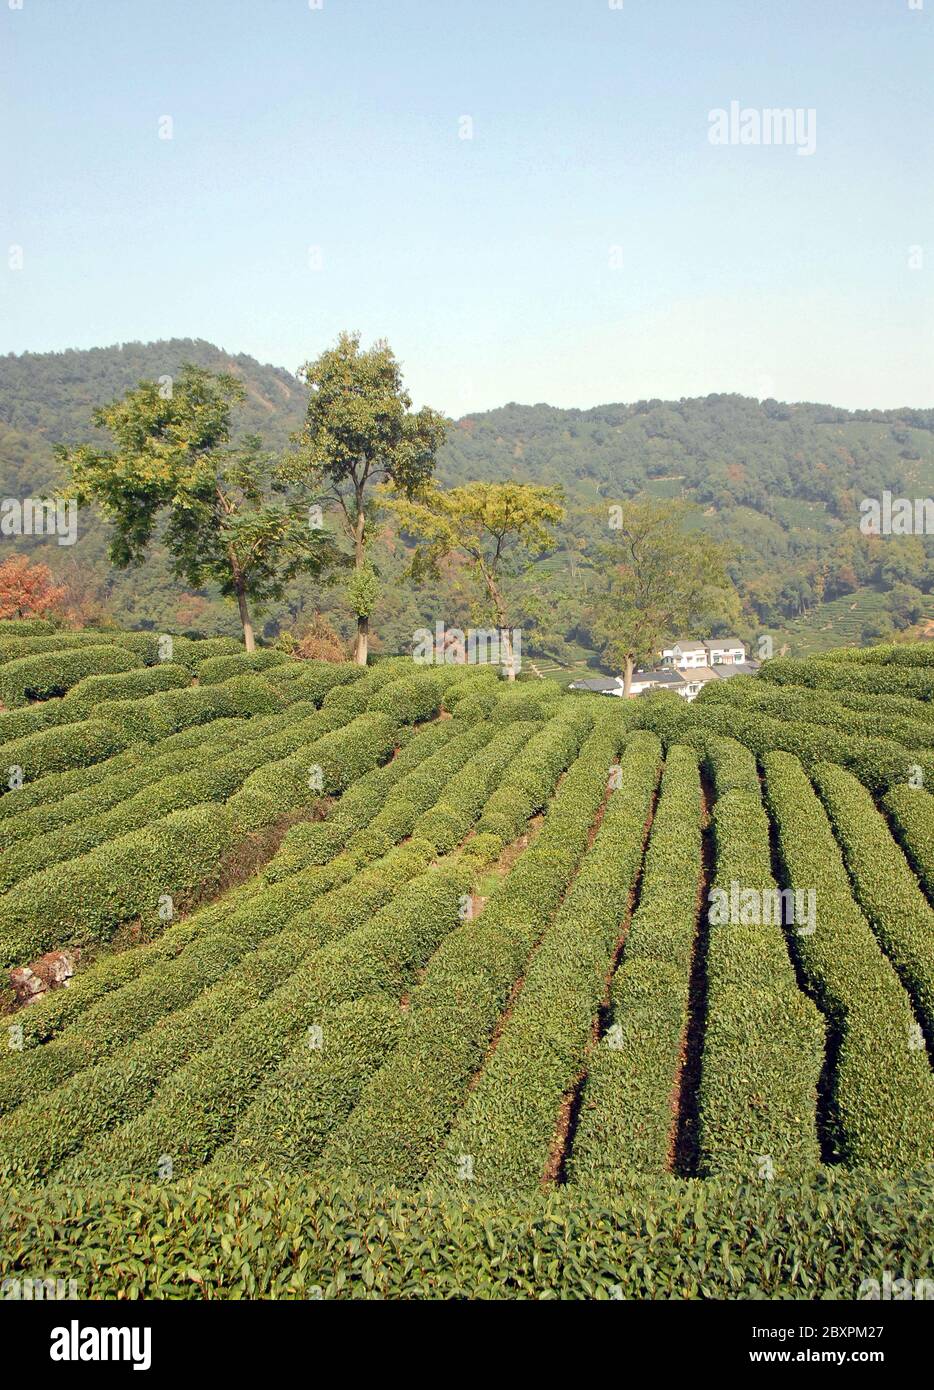 Longjing Tea Village near Hangzhou in Zhejiang Province, China. View of the village and fields where the famous Longjing tea is grown Stock Photo